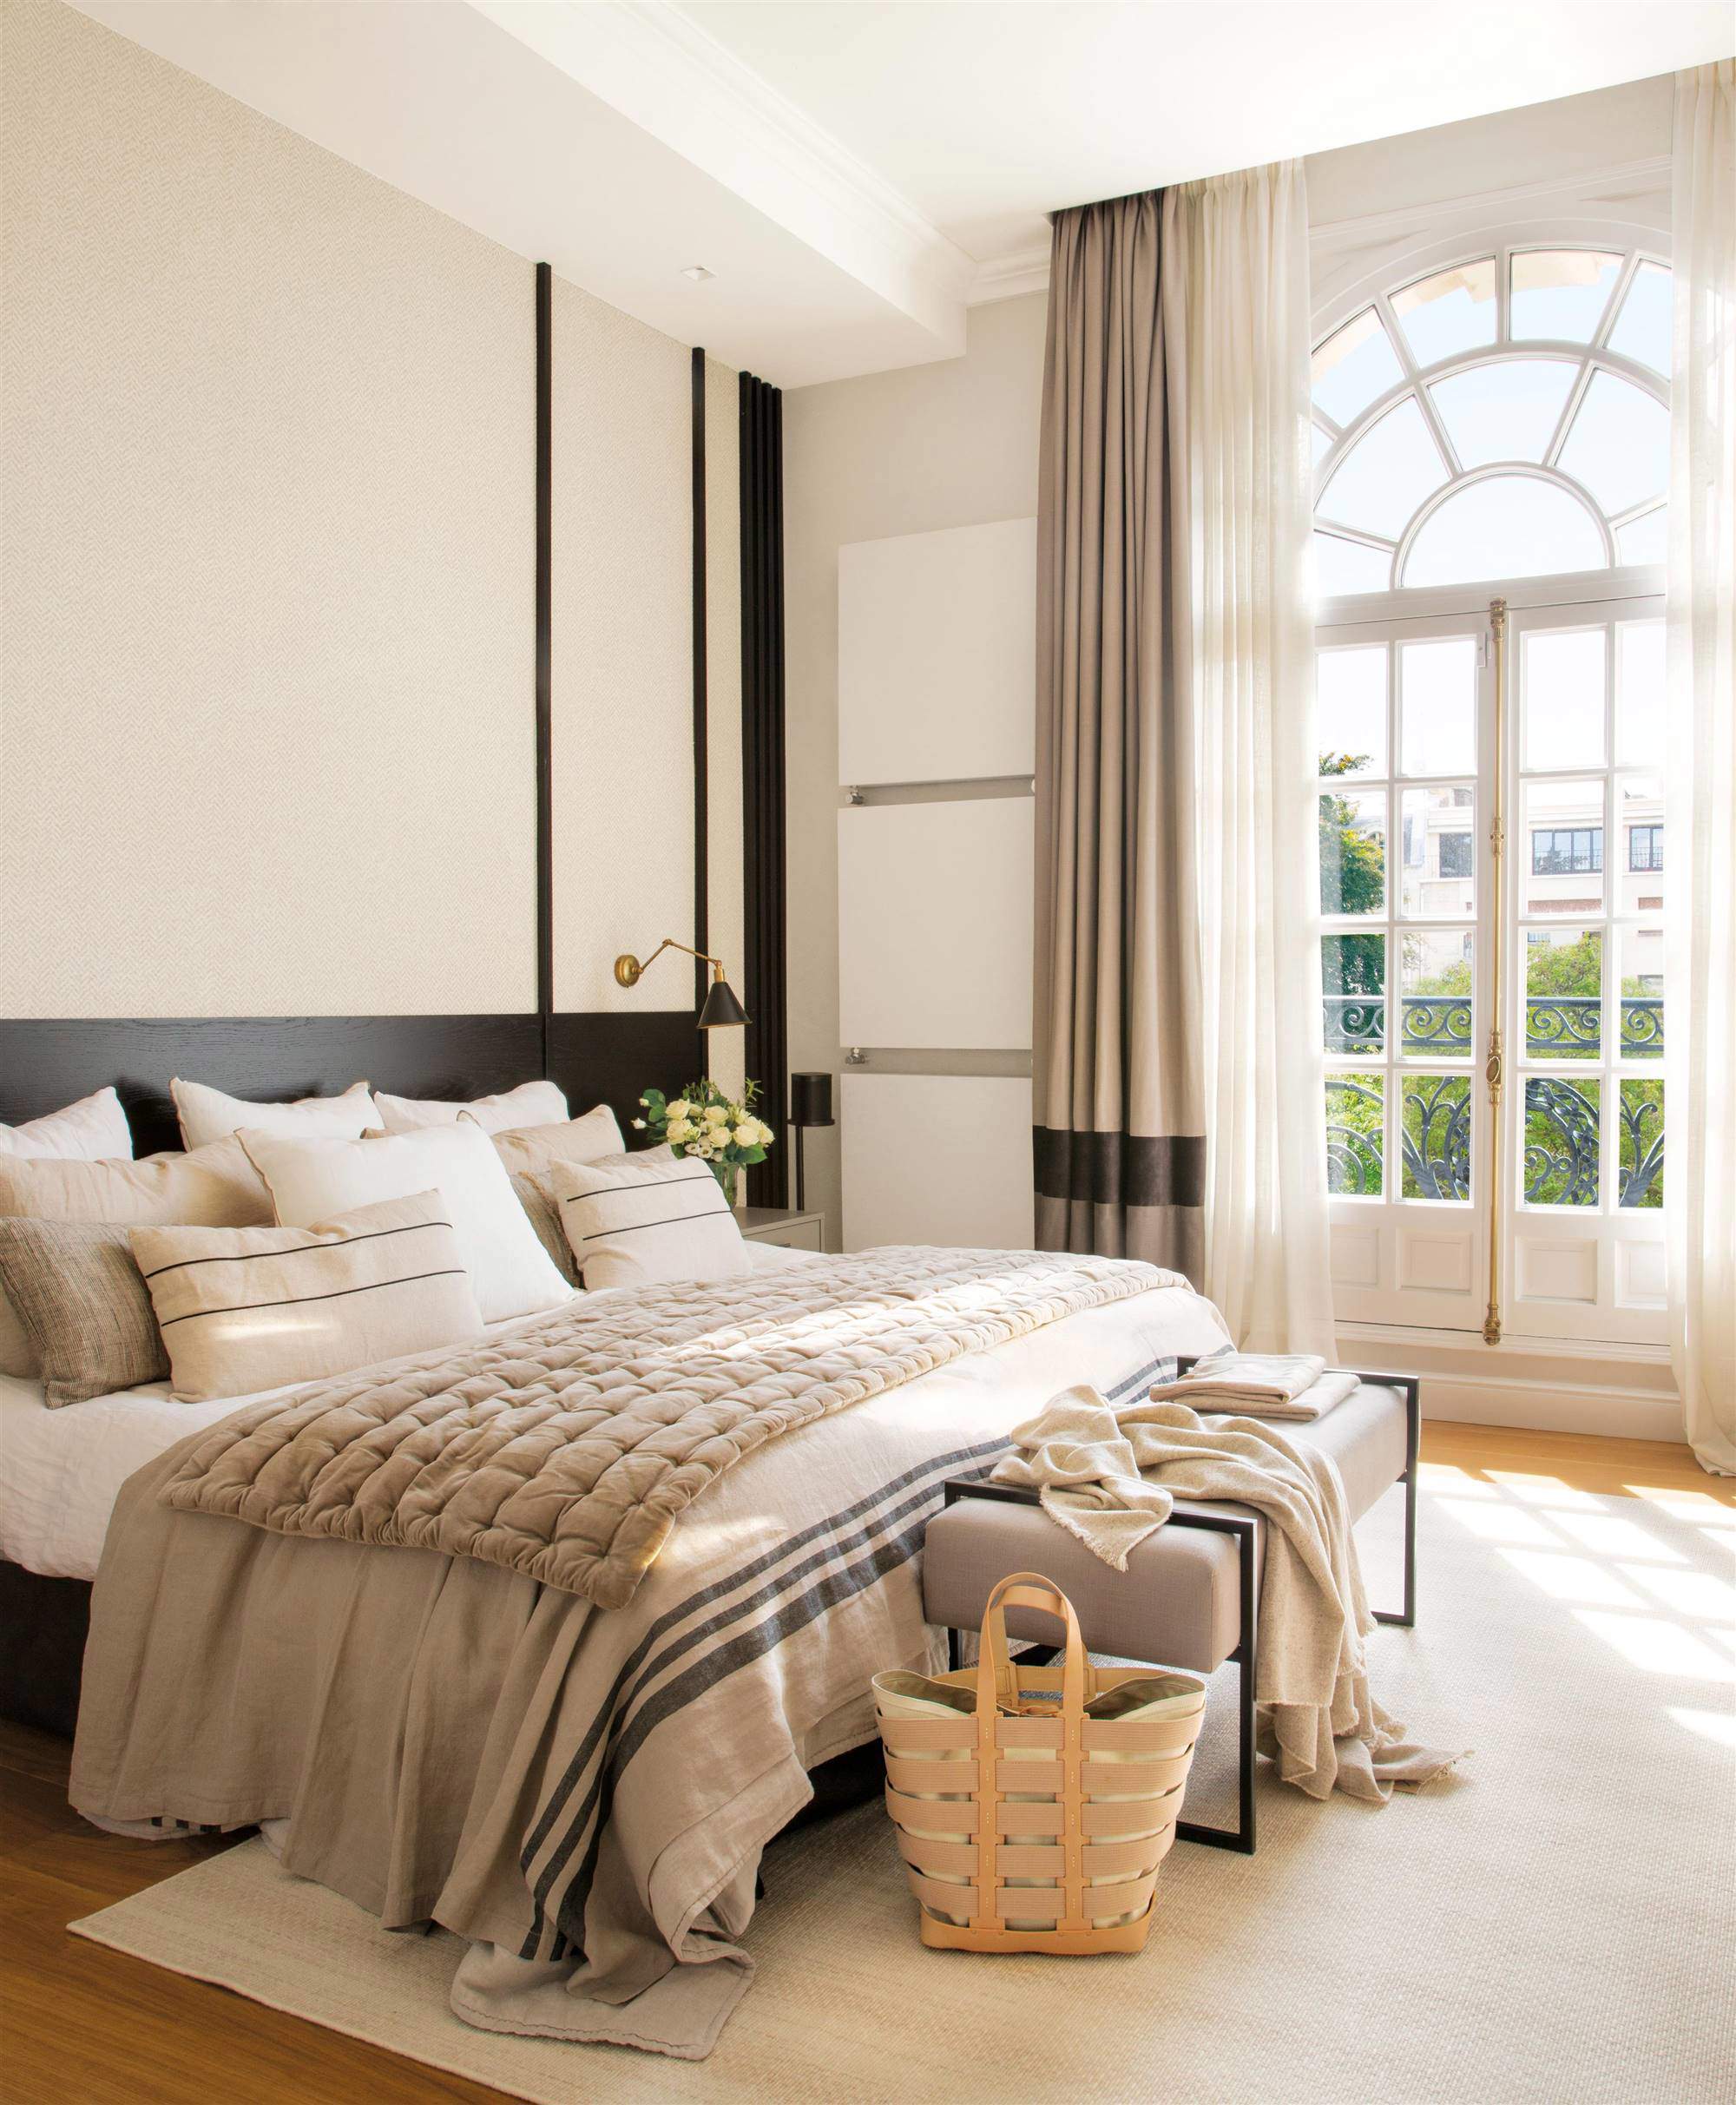 Dormitorio con cabecero de madera lacado en negro y pared empapelada.